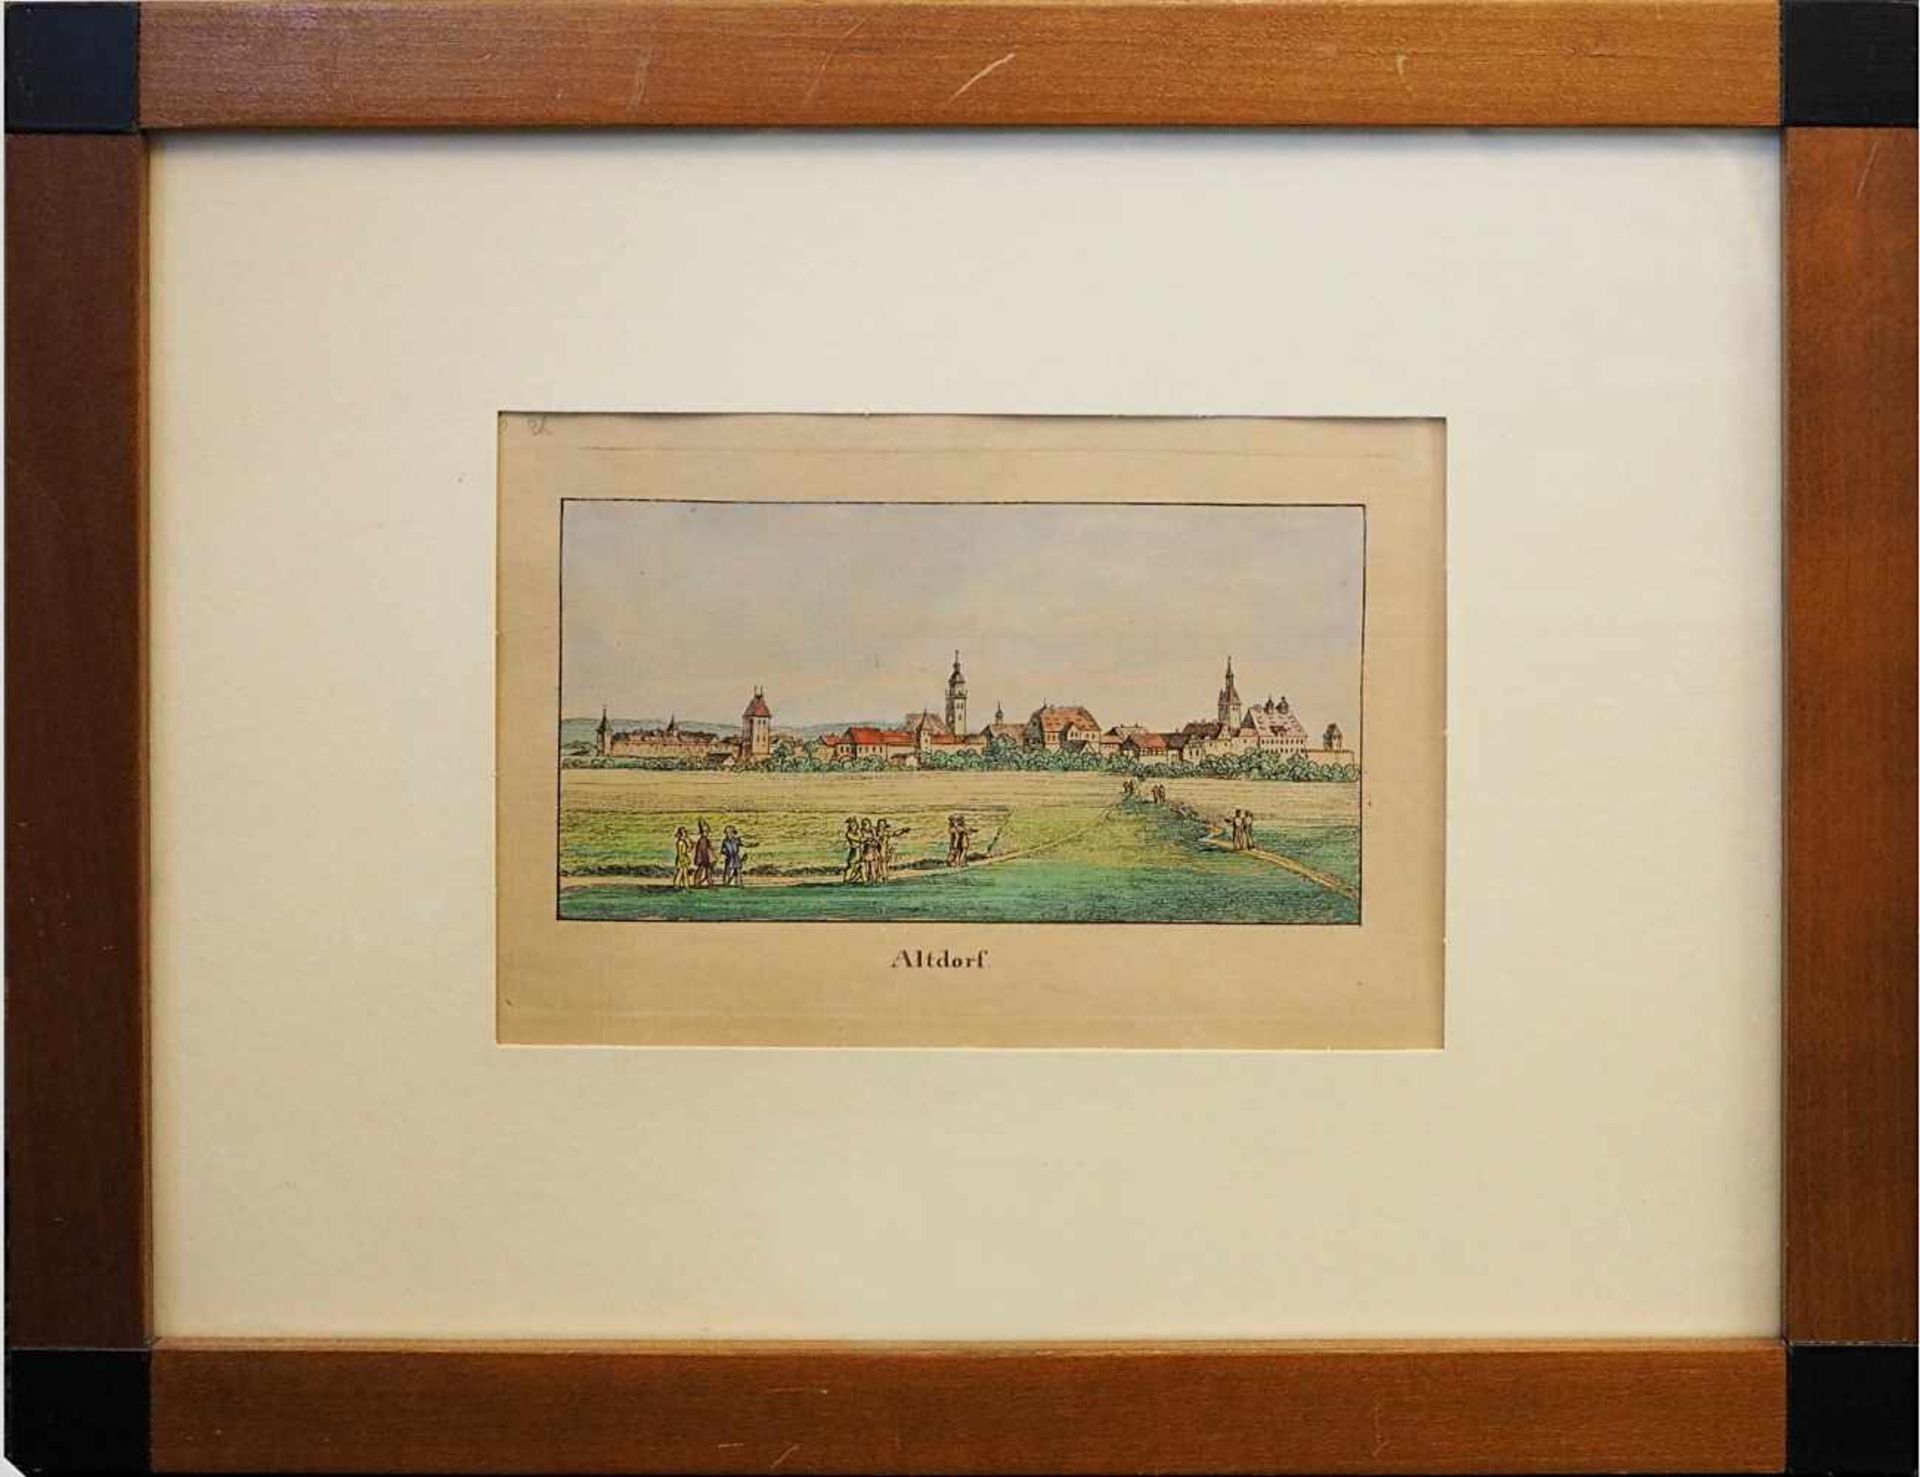 1 Grafik, wohl 19.Jh., "Ansicht von Altdorf"nachkol., 12x17cm, Papier gebräunt, RhG/ - Bild 2 aus 2